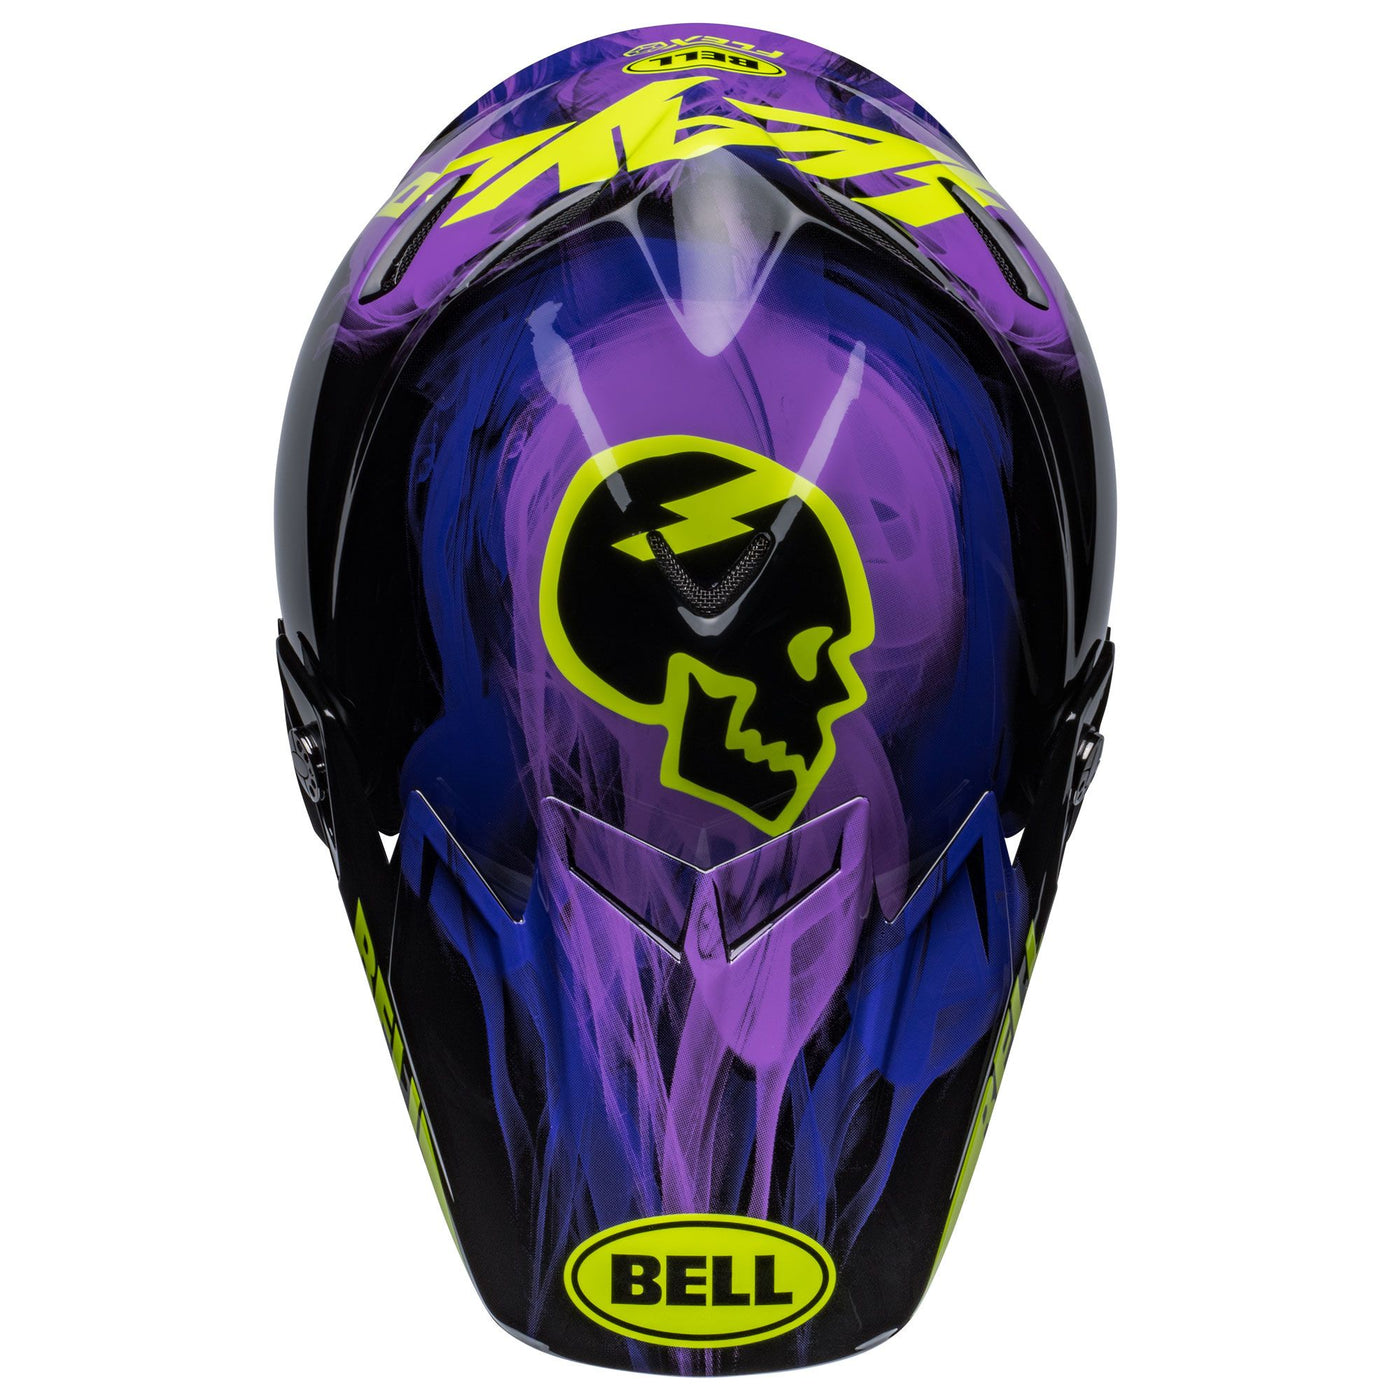 bell moto 9s flex dirt motorcycle helmet slayco gloss black purple top